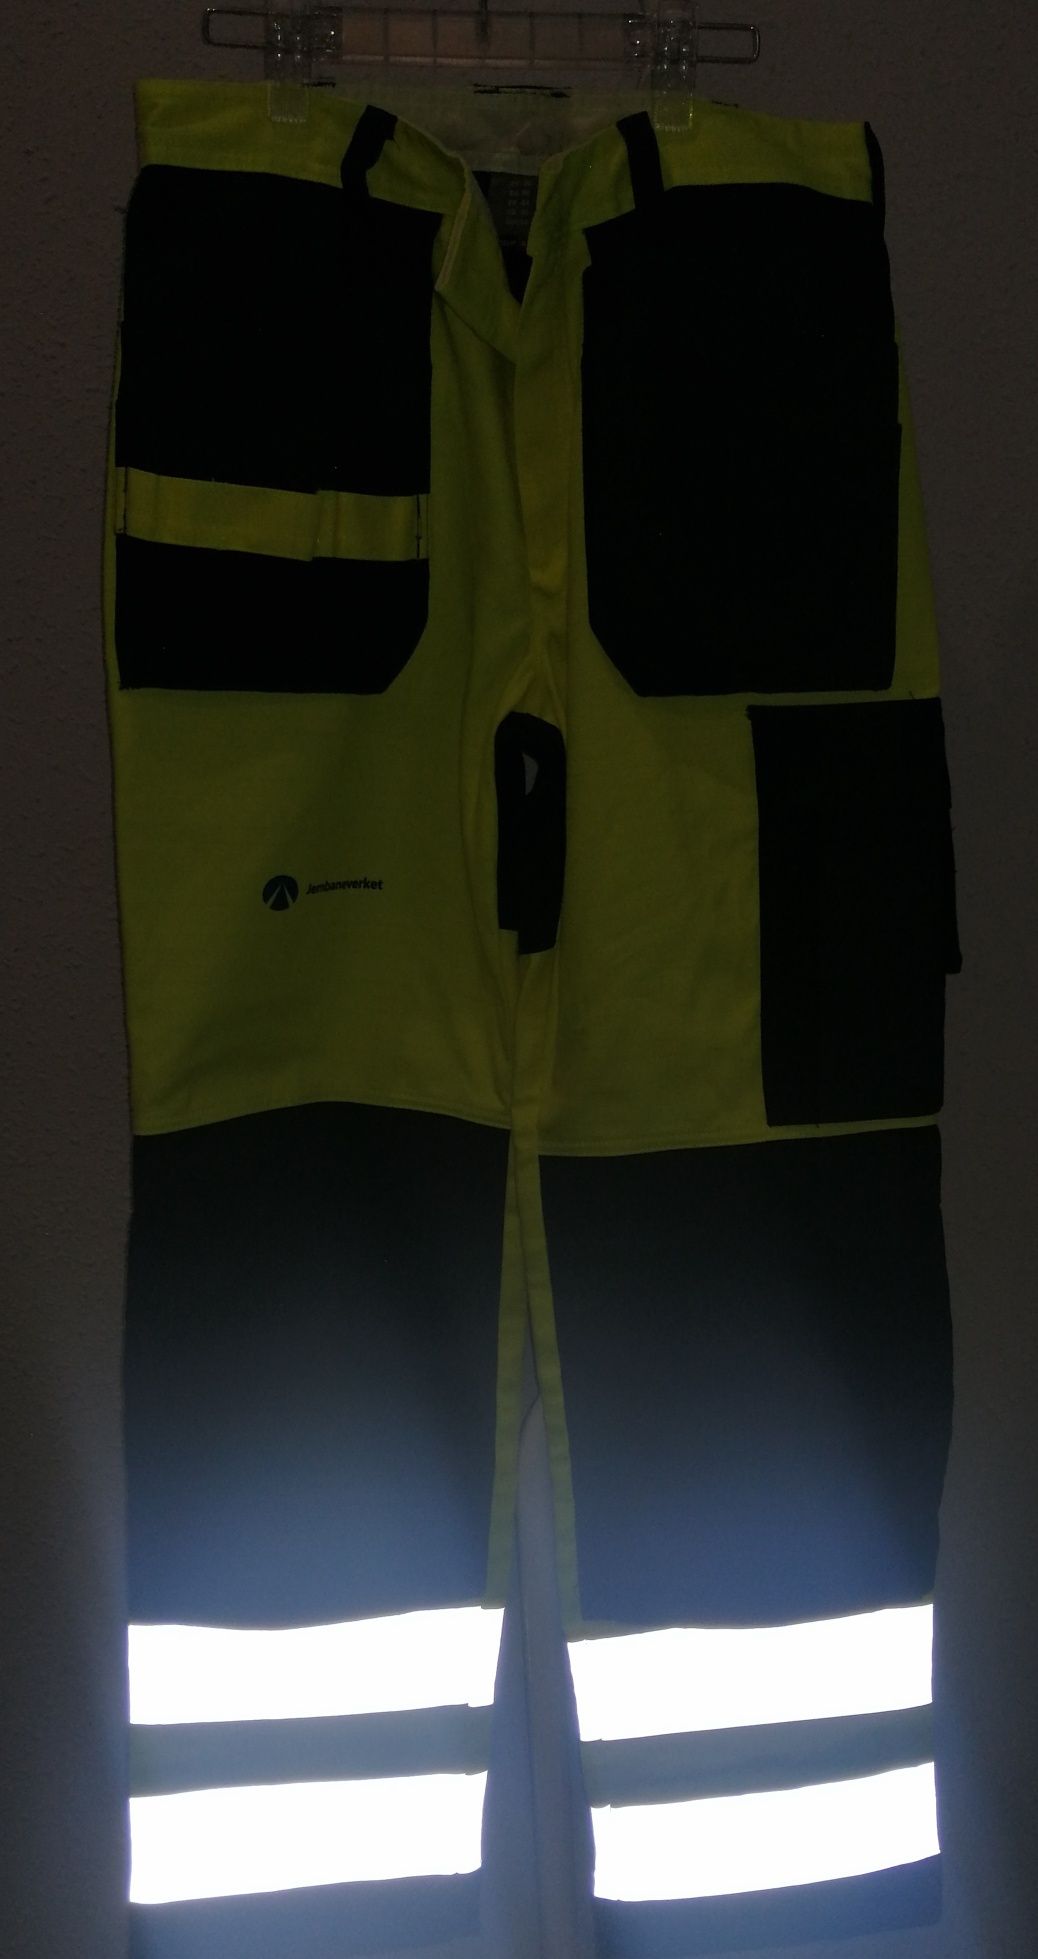 NOWE Spodnie robocze FRISTADS ostrzegawcze odblask L-XL (50)  84-86 cm